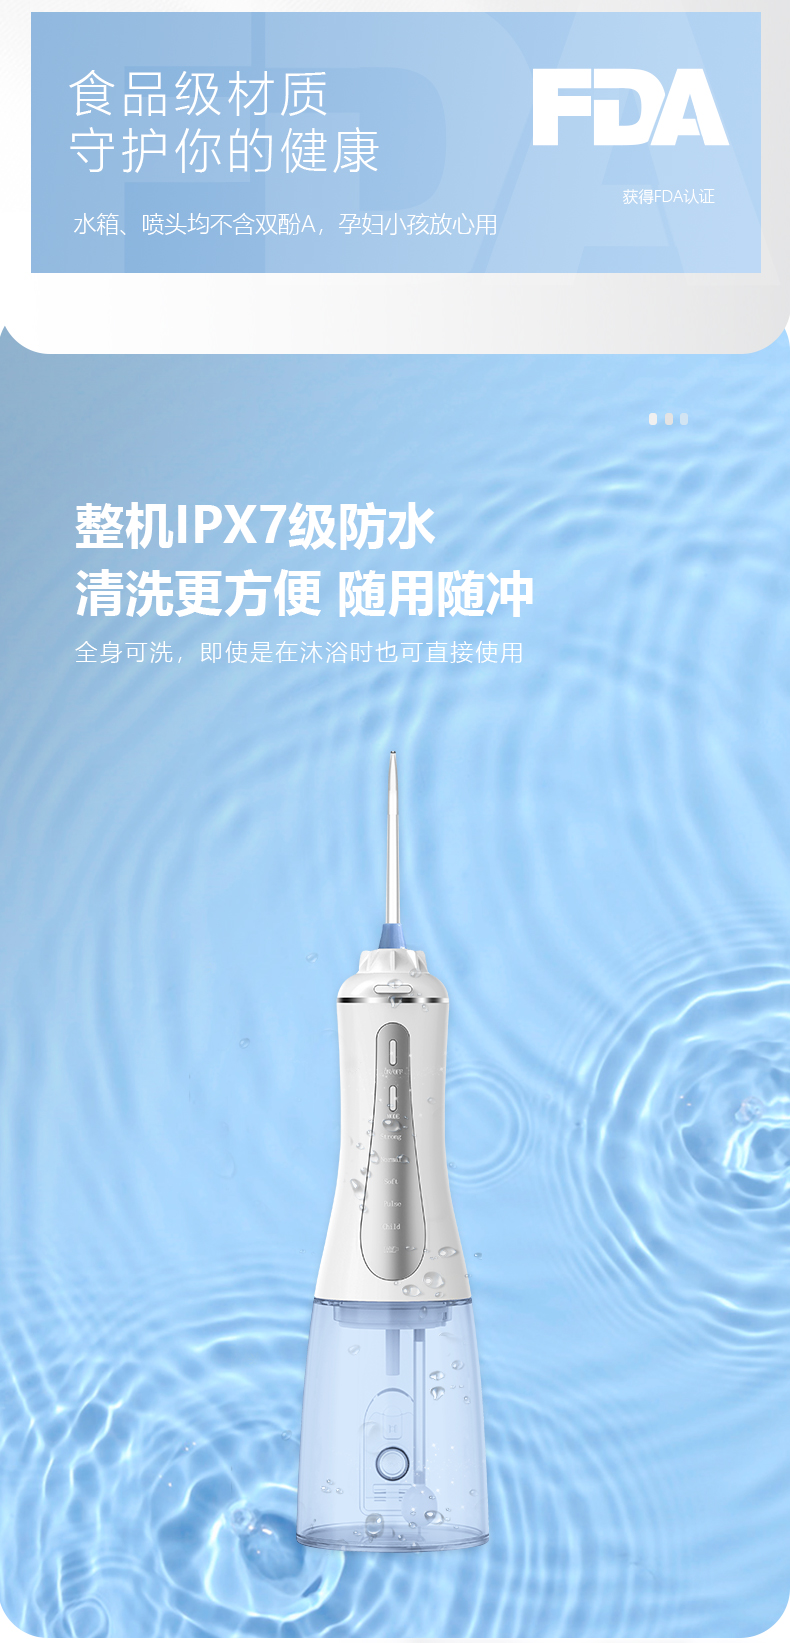 直立式洗牙器详情页中文版_06